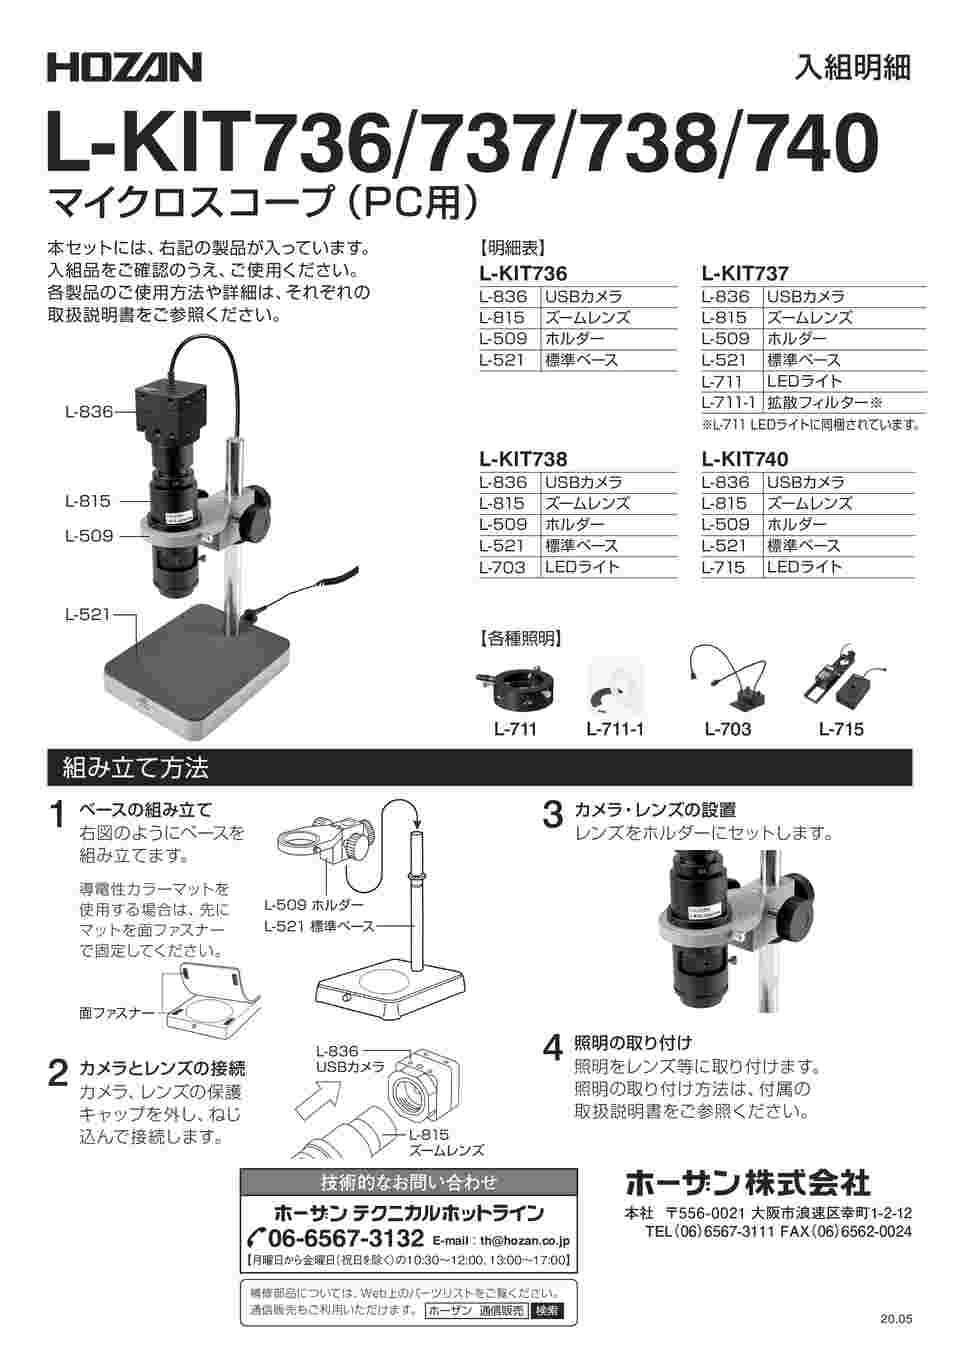 ホーザン マイクロスコープ PC用 L-KIT736-